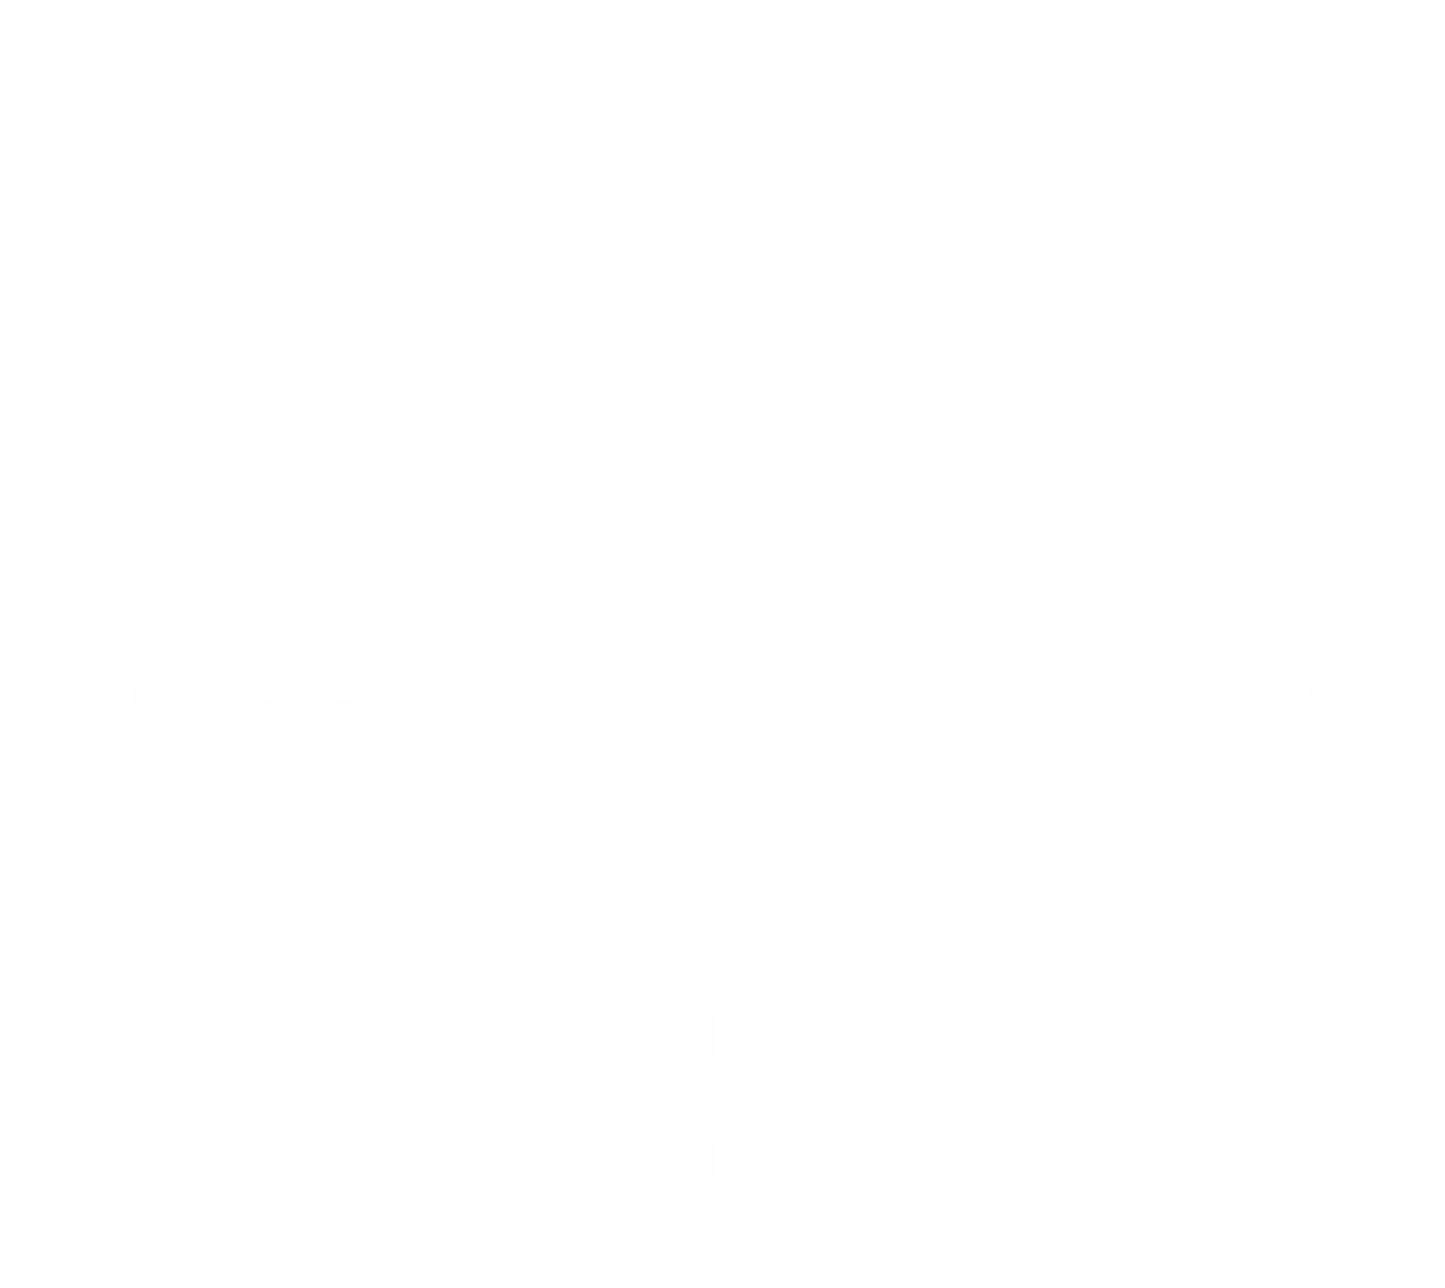 Grill Marksmen